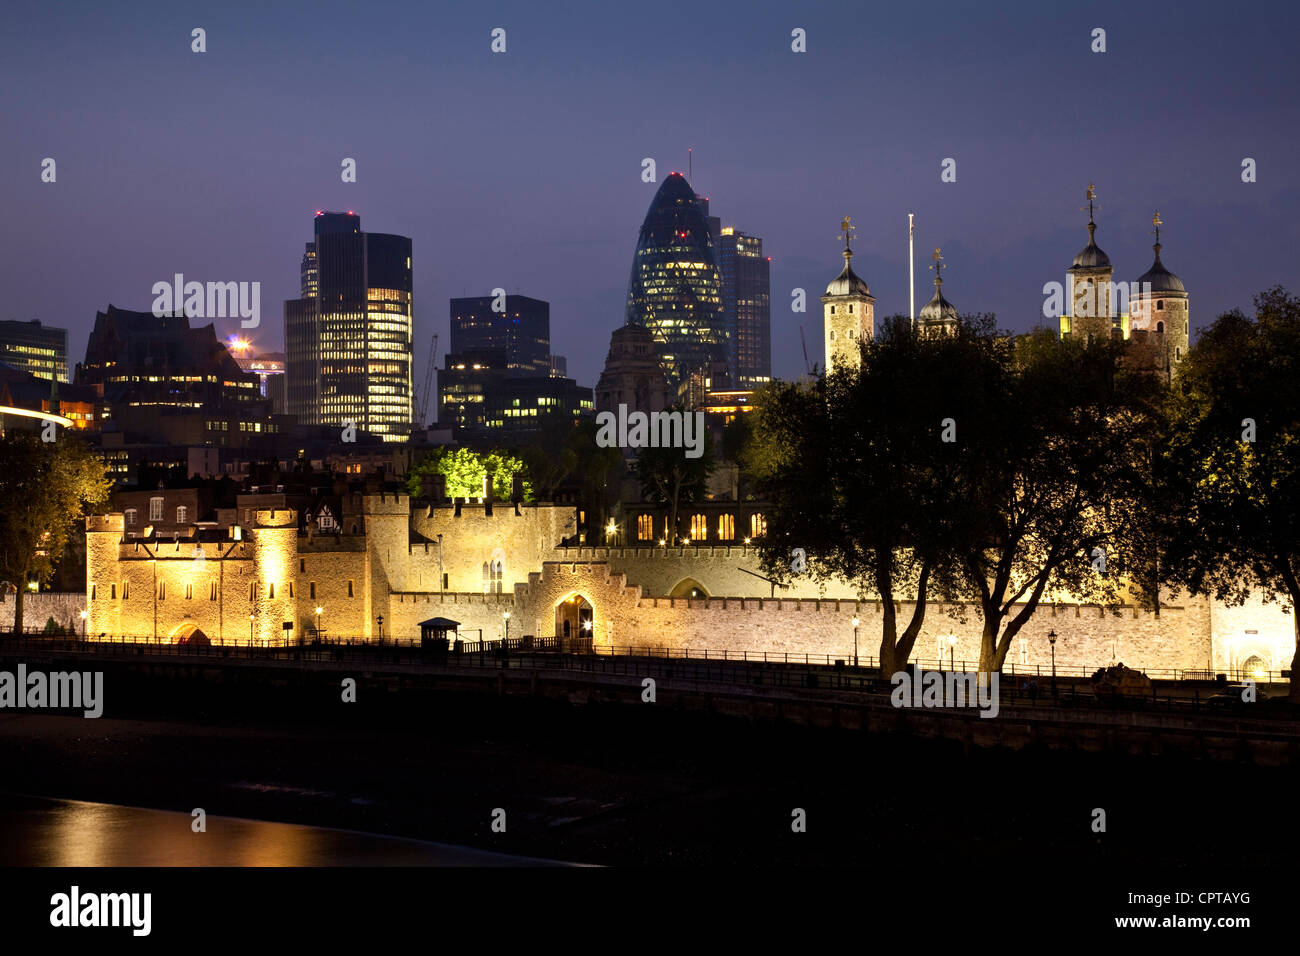 La Tour de Londres et les toits de la ville, Londres, Angleterre Banque D'Images